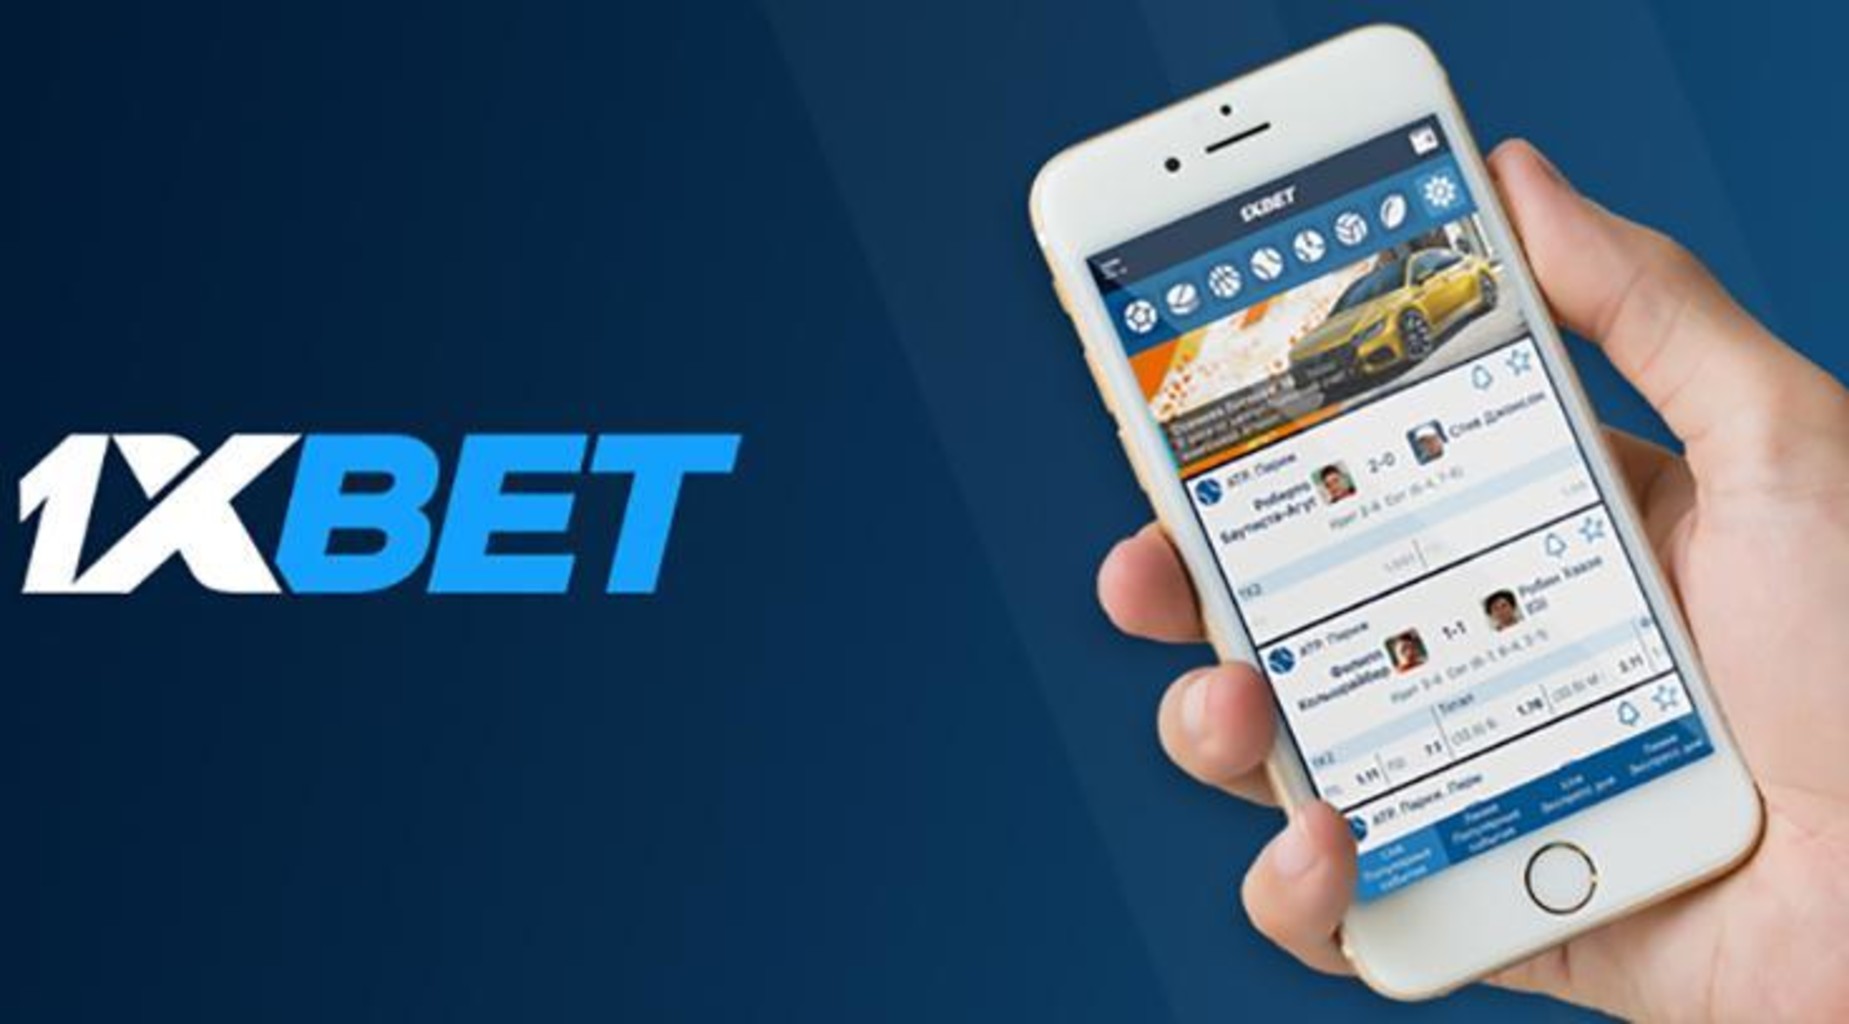 1xbet мобильное приложение скачать бесплатно играть в покер техасский онлайн бесплатно без регистрации